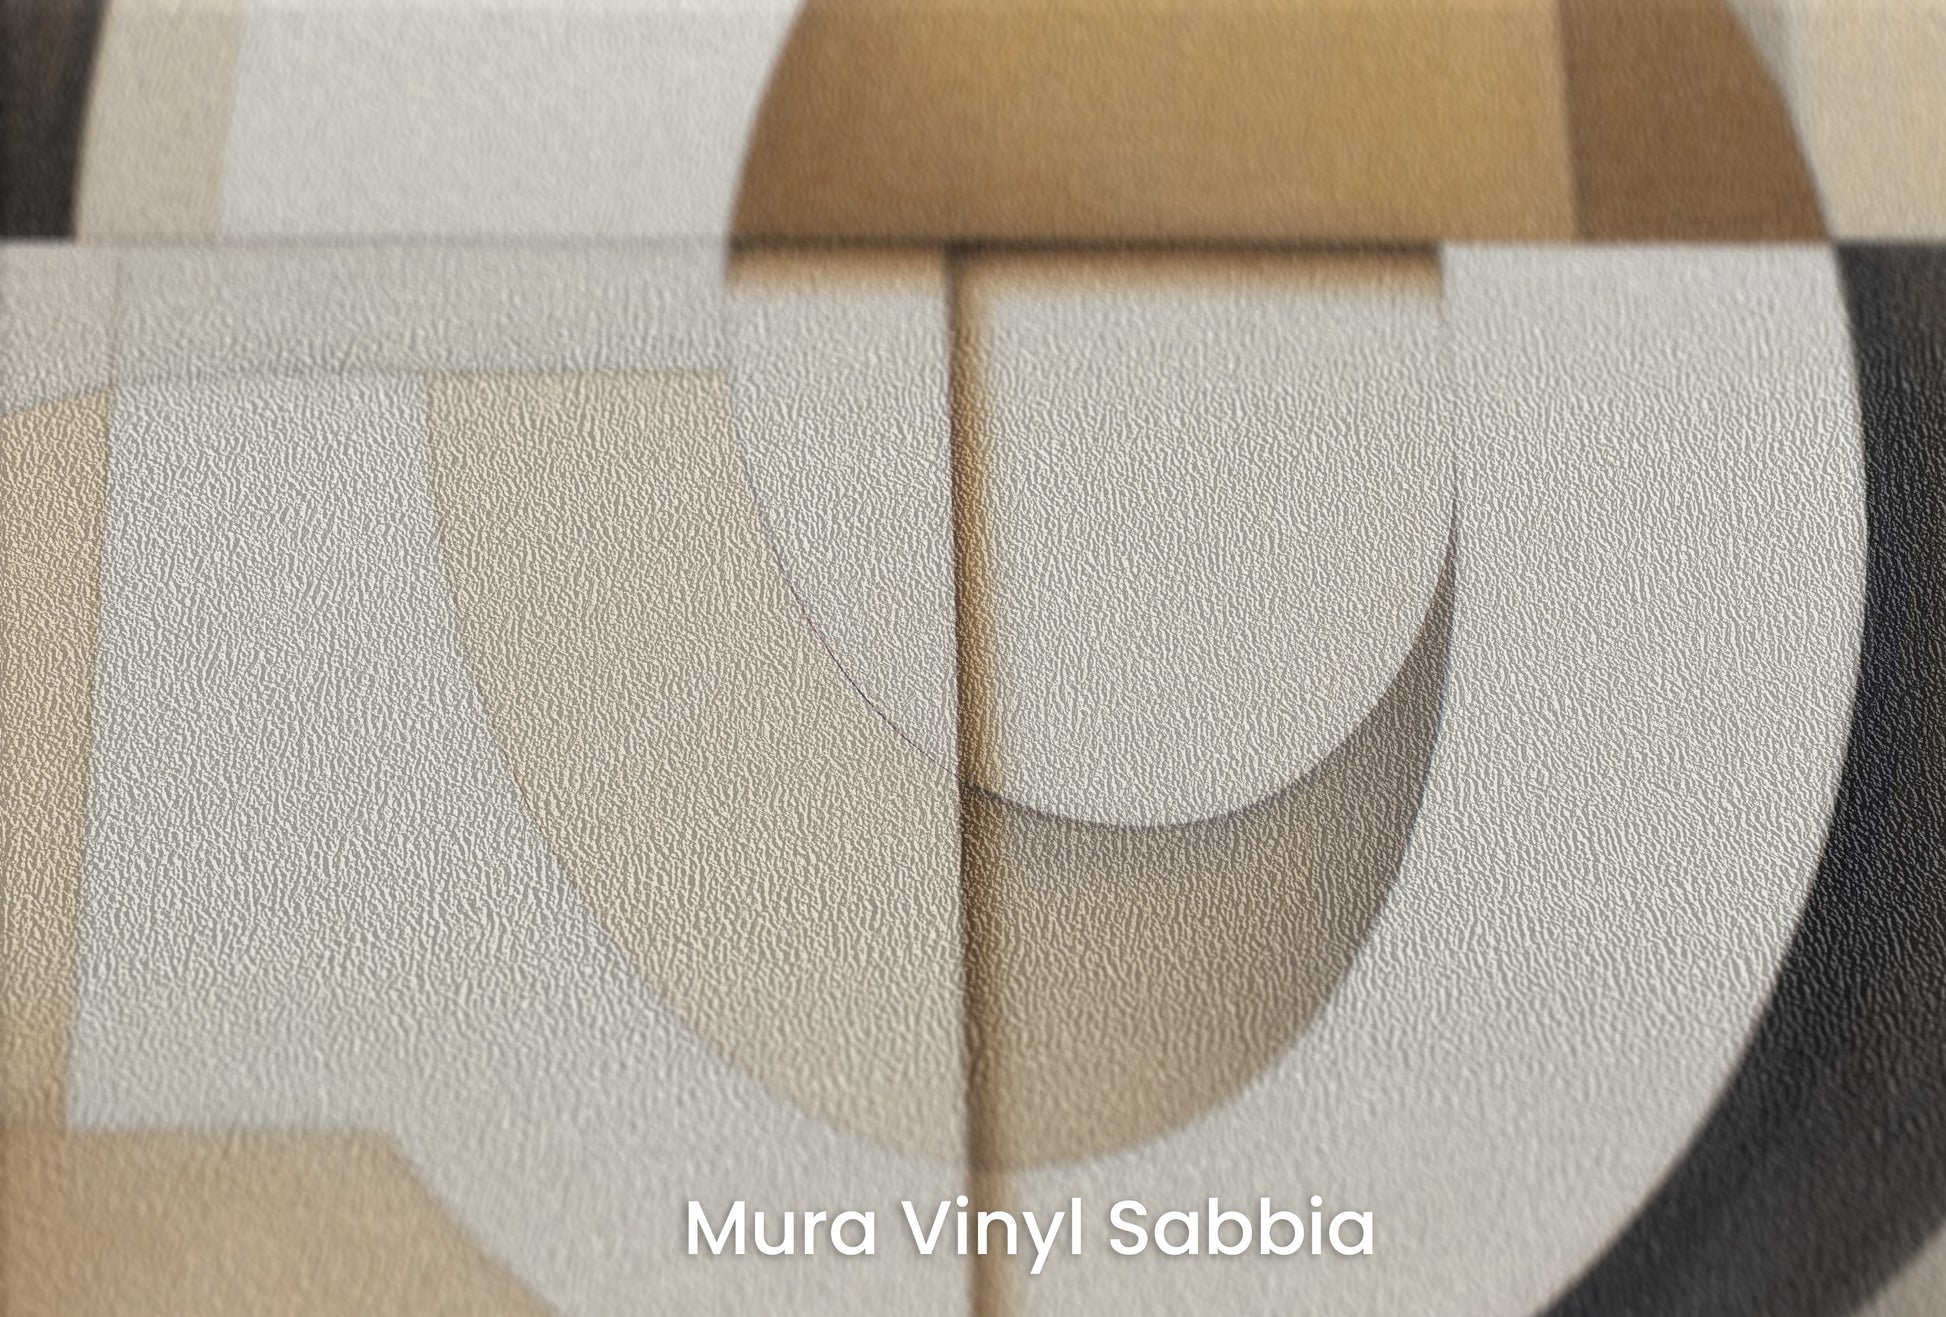 Zbliżenie na artystyczną fototapetę o nazwie MODERNIST SPHERICAL ARRAY na podłożu Mura Vinyl Sabbia struktura grubego ziarna piasku.